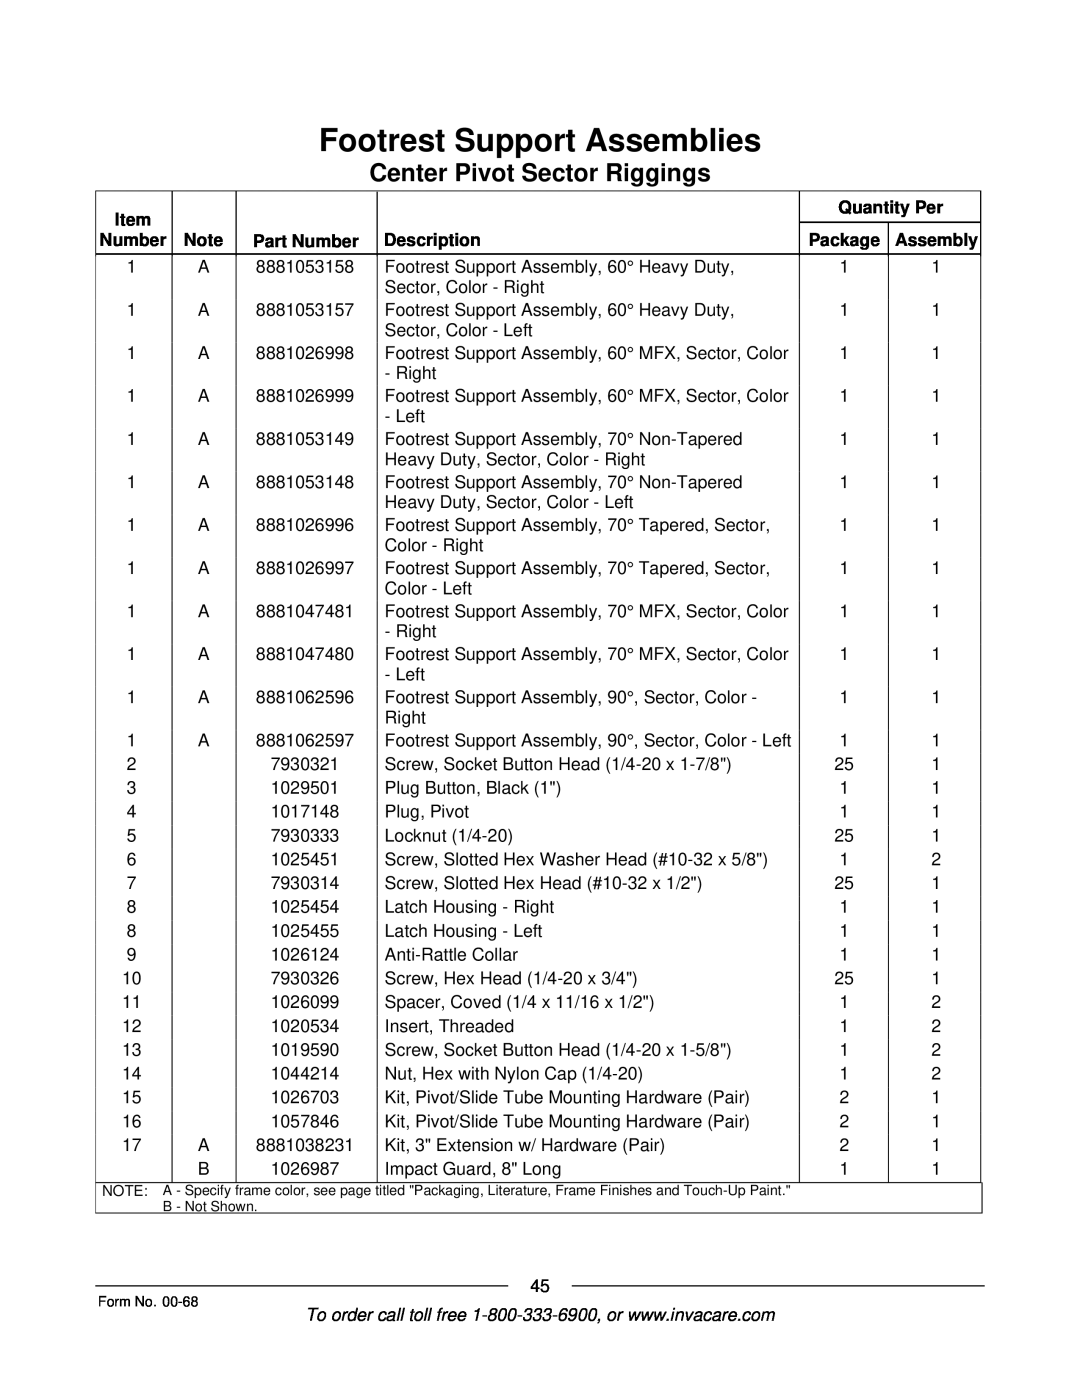 Invacare R2TM manual Footrest Support Assemblies, Center Pivot Sector Riggings, Quantity Per, Part Number, Description 